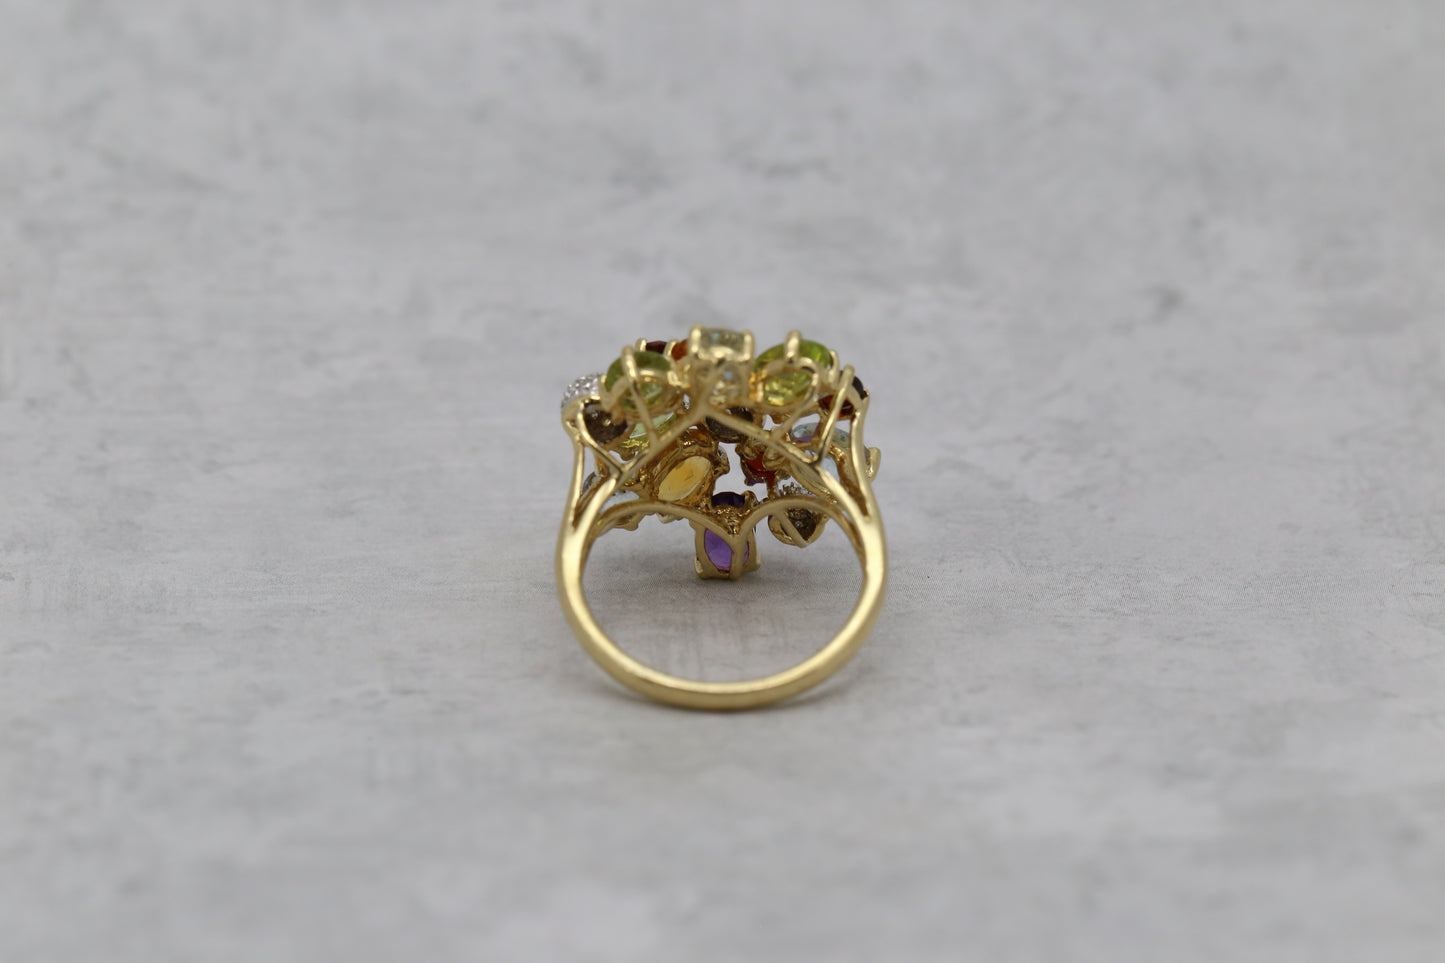 Vintage 14k Yellow Gold Multi-Gemstone Ring, Size 7 - 5.7g